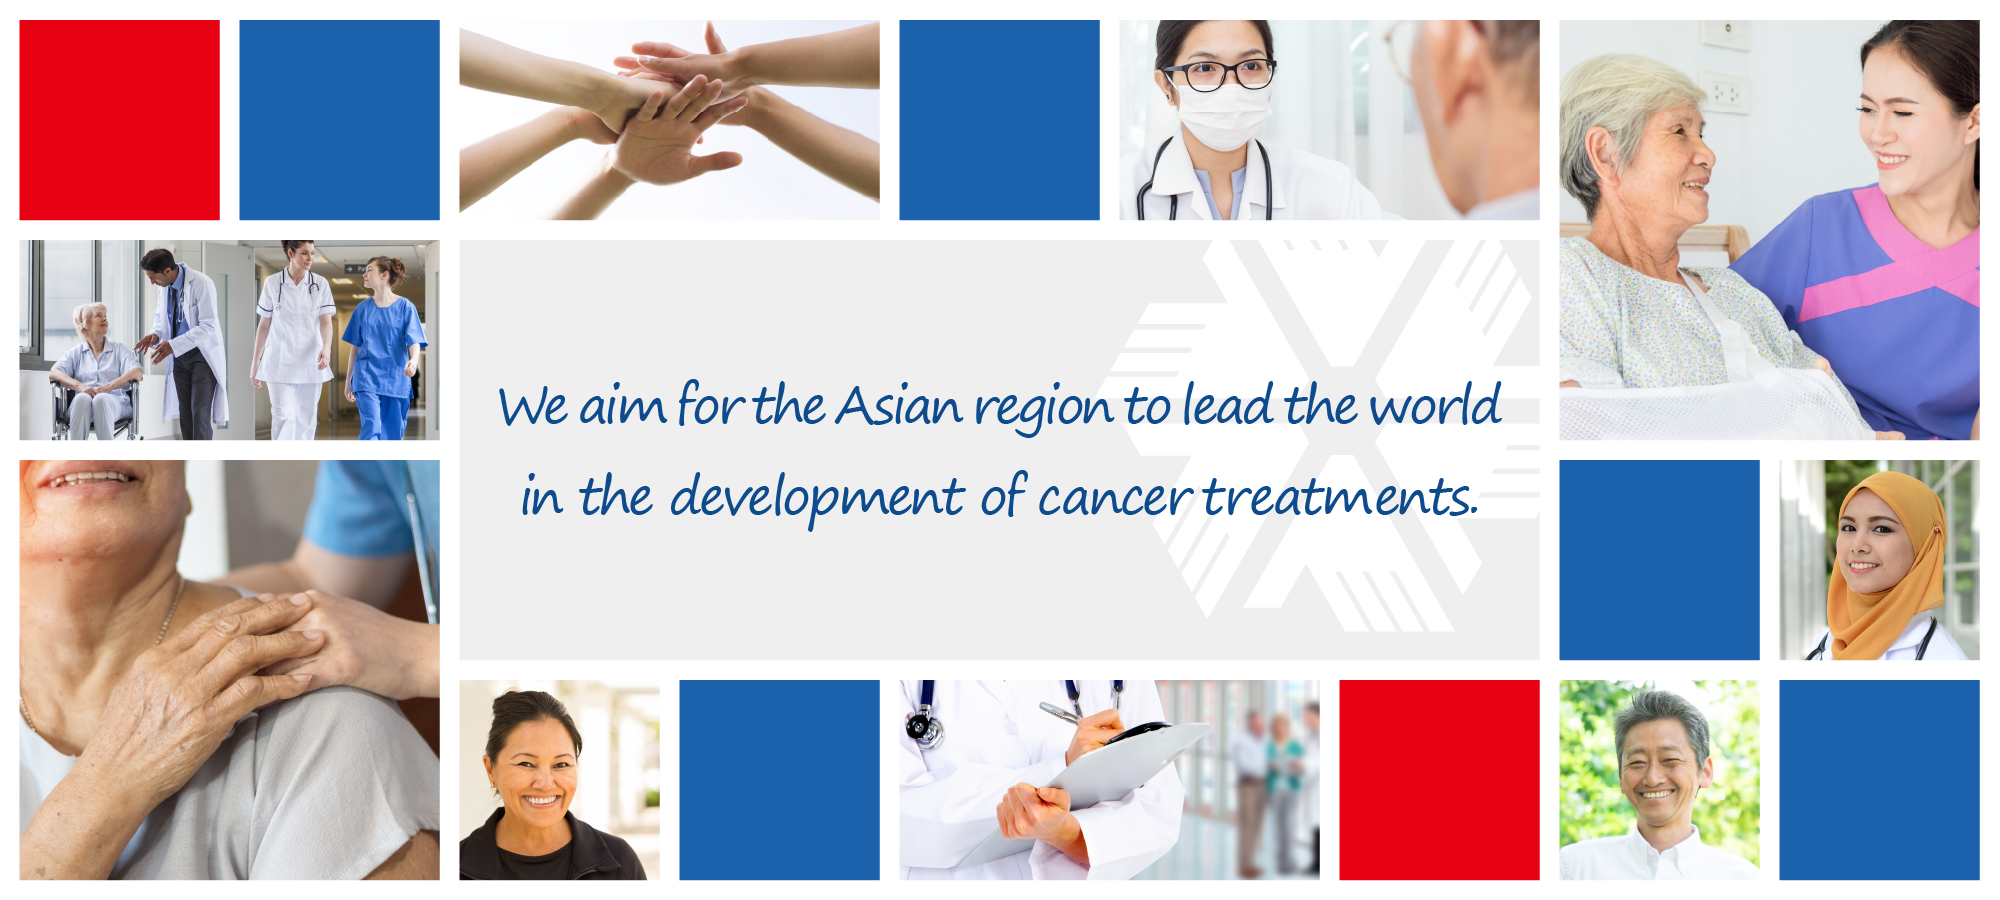 Chúng tôi đặt mục tiêu khu vực Châu Á dẫn đầu thế giới trong việc phát triển các phương pháp điều trị ung thư.